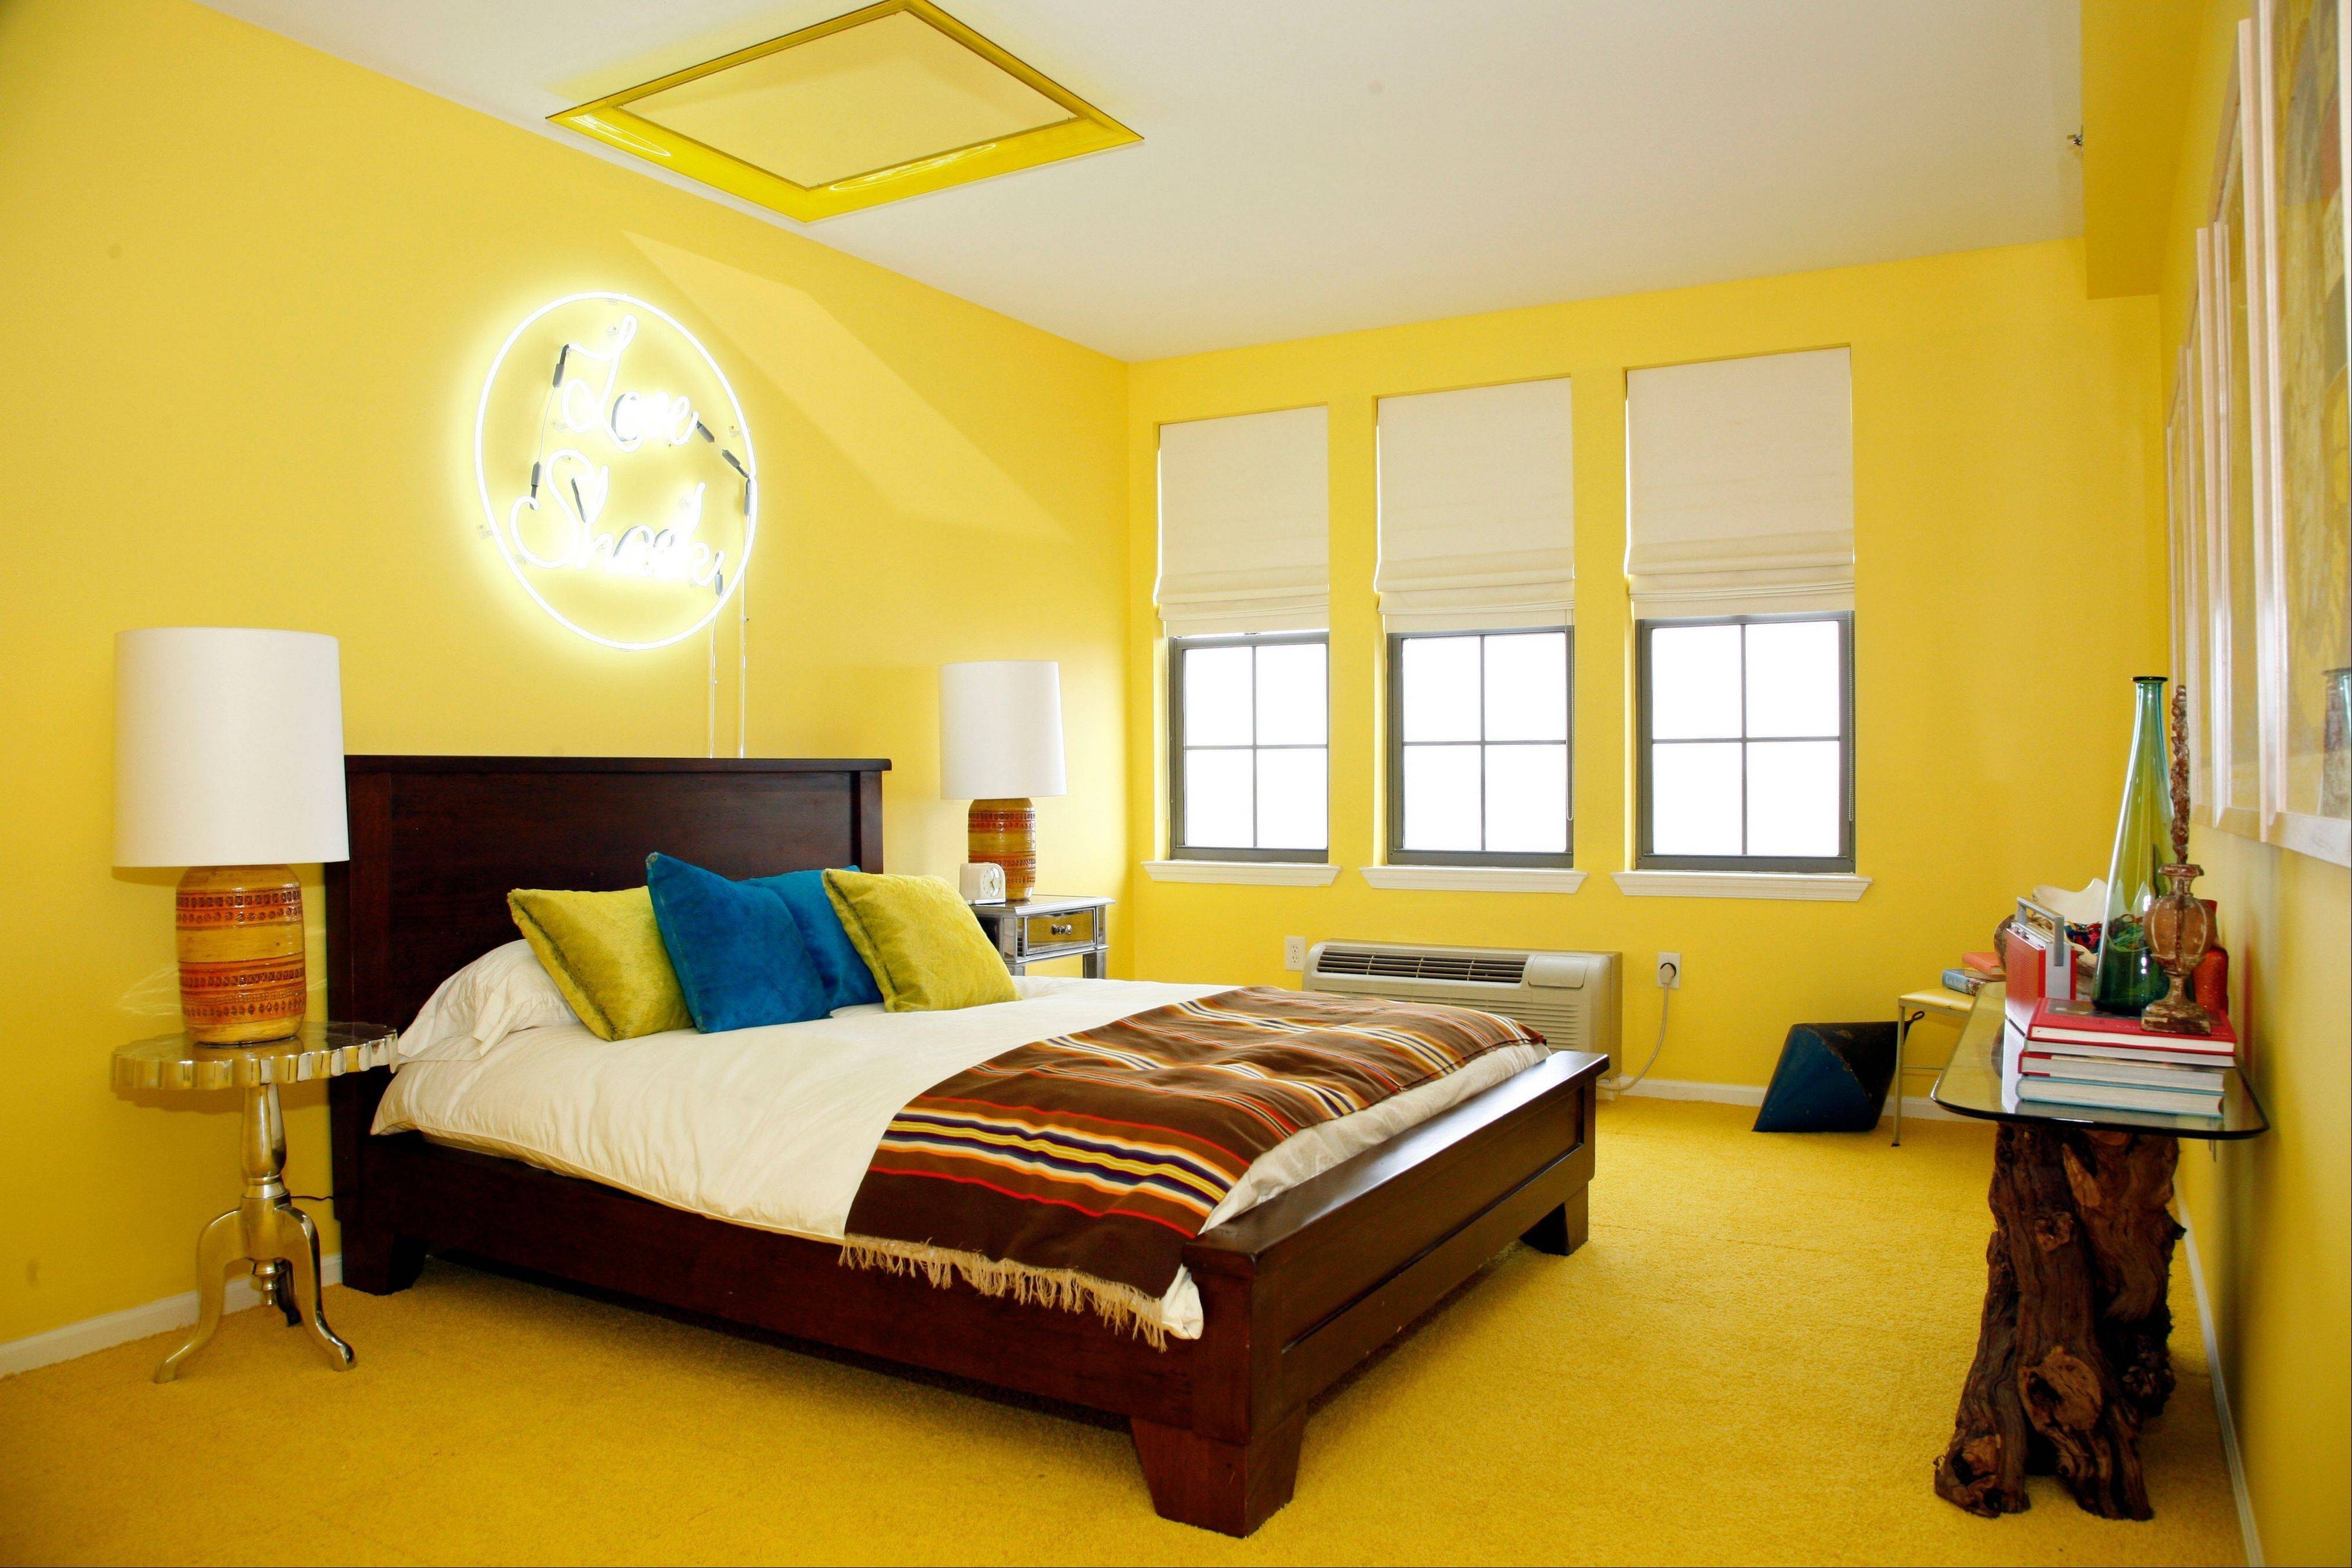 Какого цвета должна быть мебель. Цветовые решения в интерьере. Комната с желтыми стенами. Покрашенные стены в интерьере. Комната в желтом цвете.